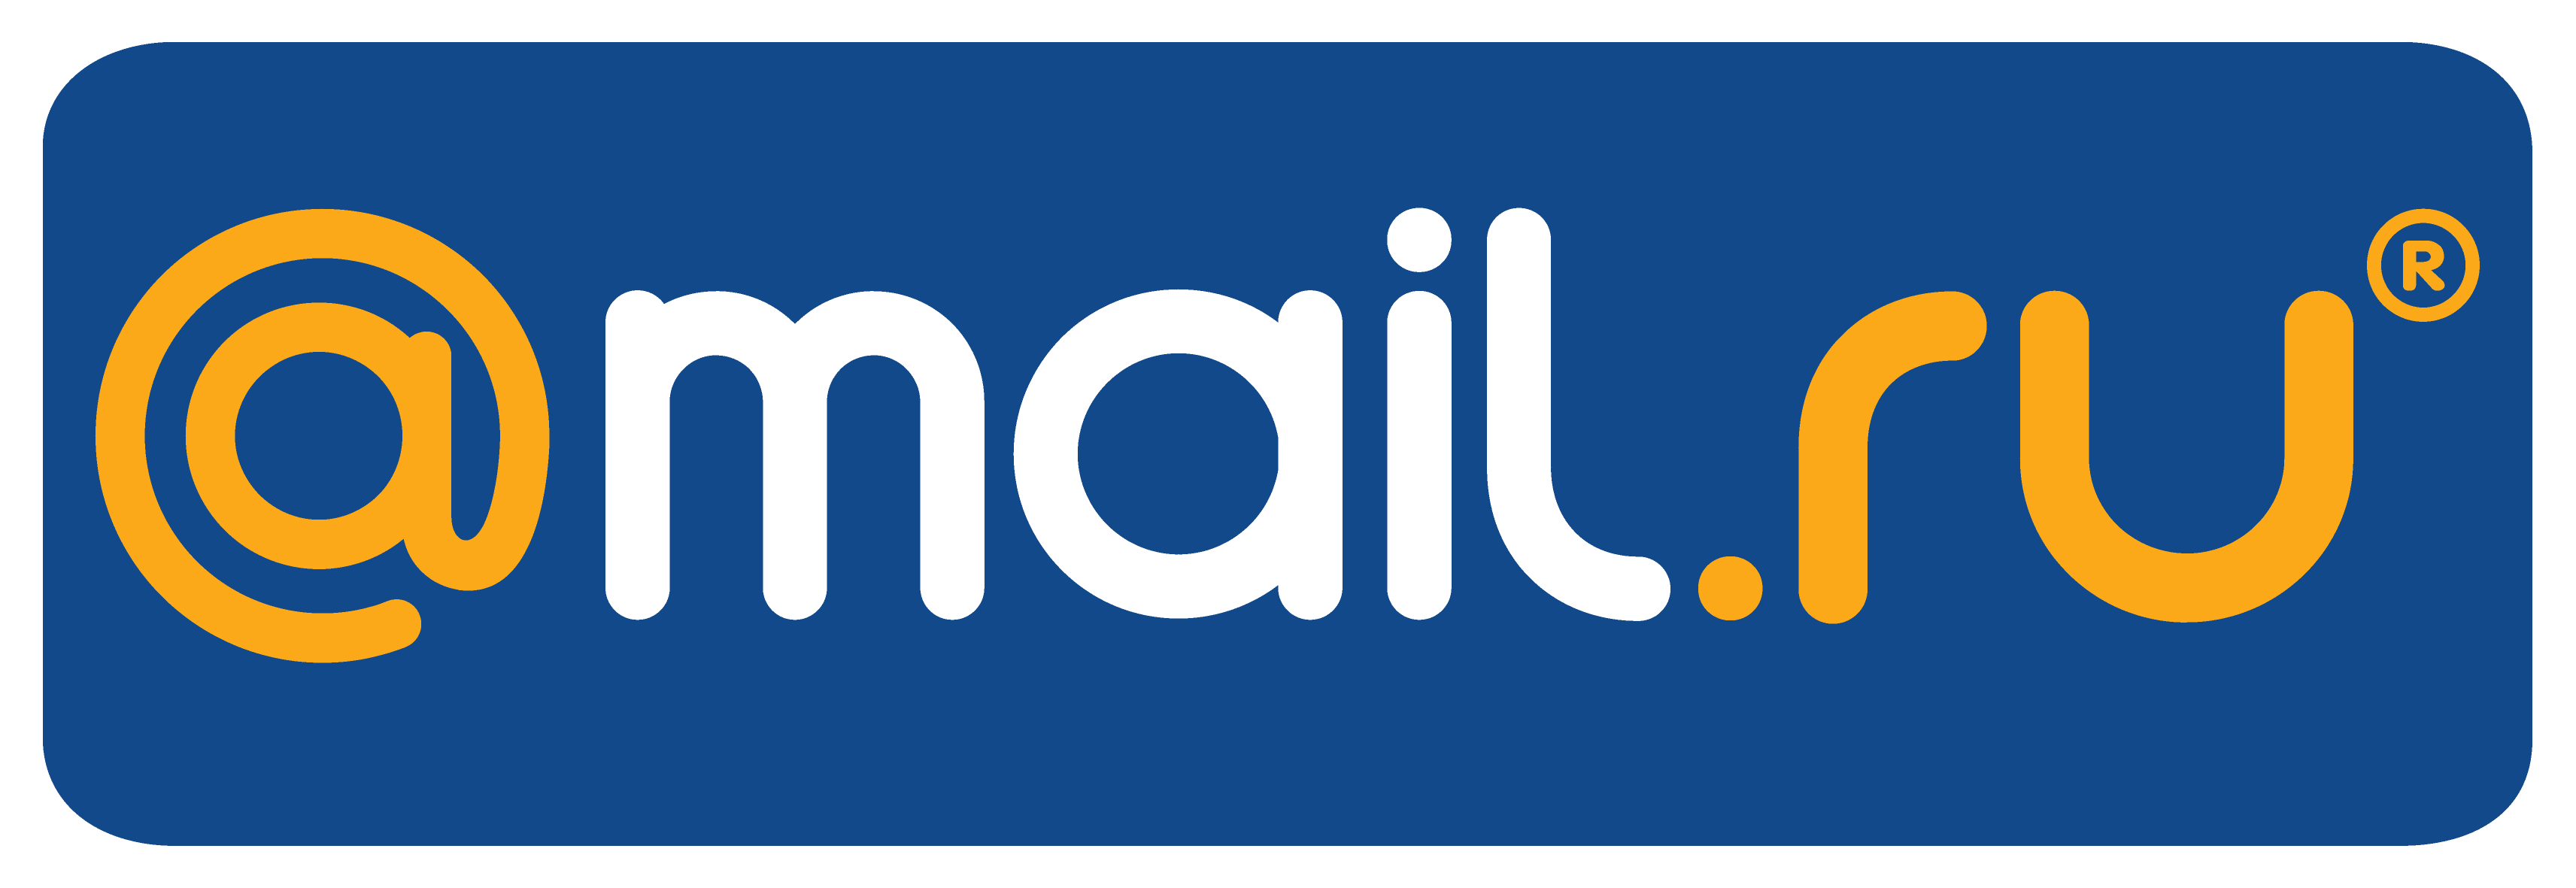 Mail ru gk. Mail. Mail.ru лого. Почта майл. Логотип мейл ру.